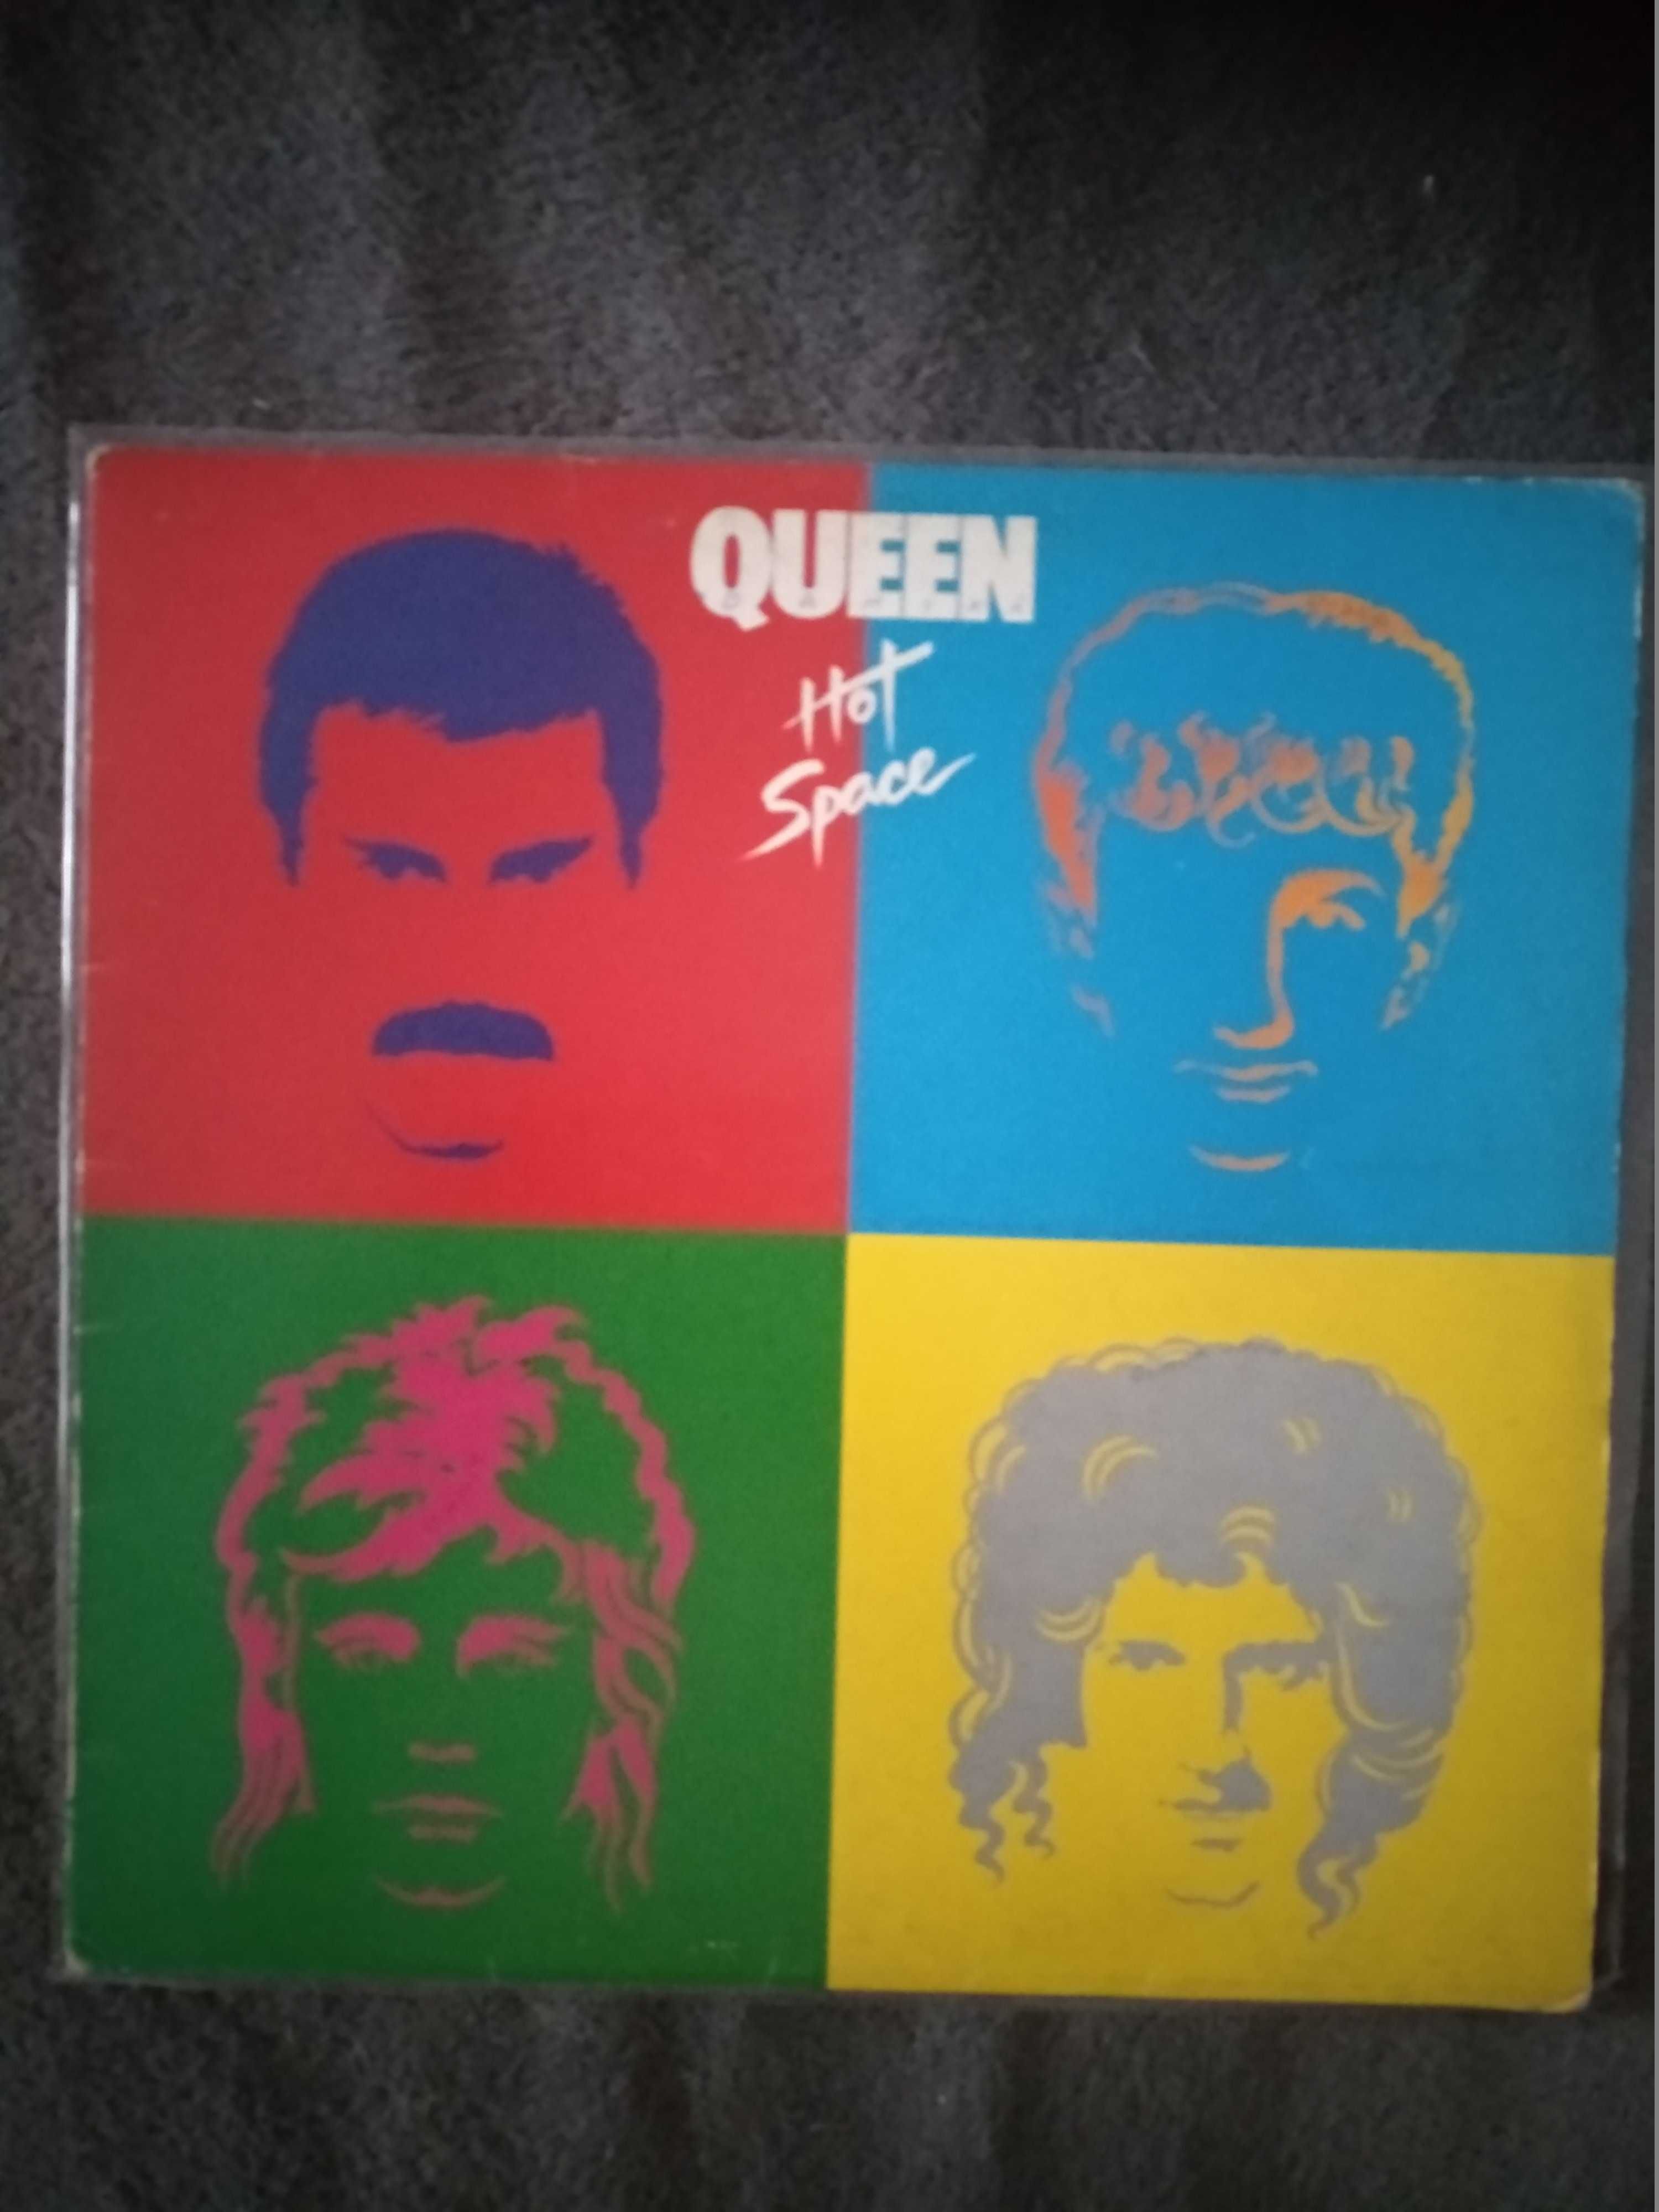 Queen – Hot Space jugoslawia